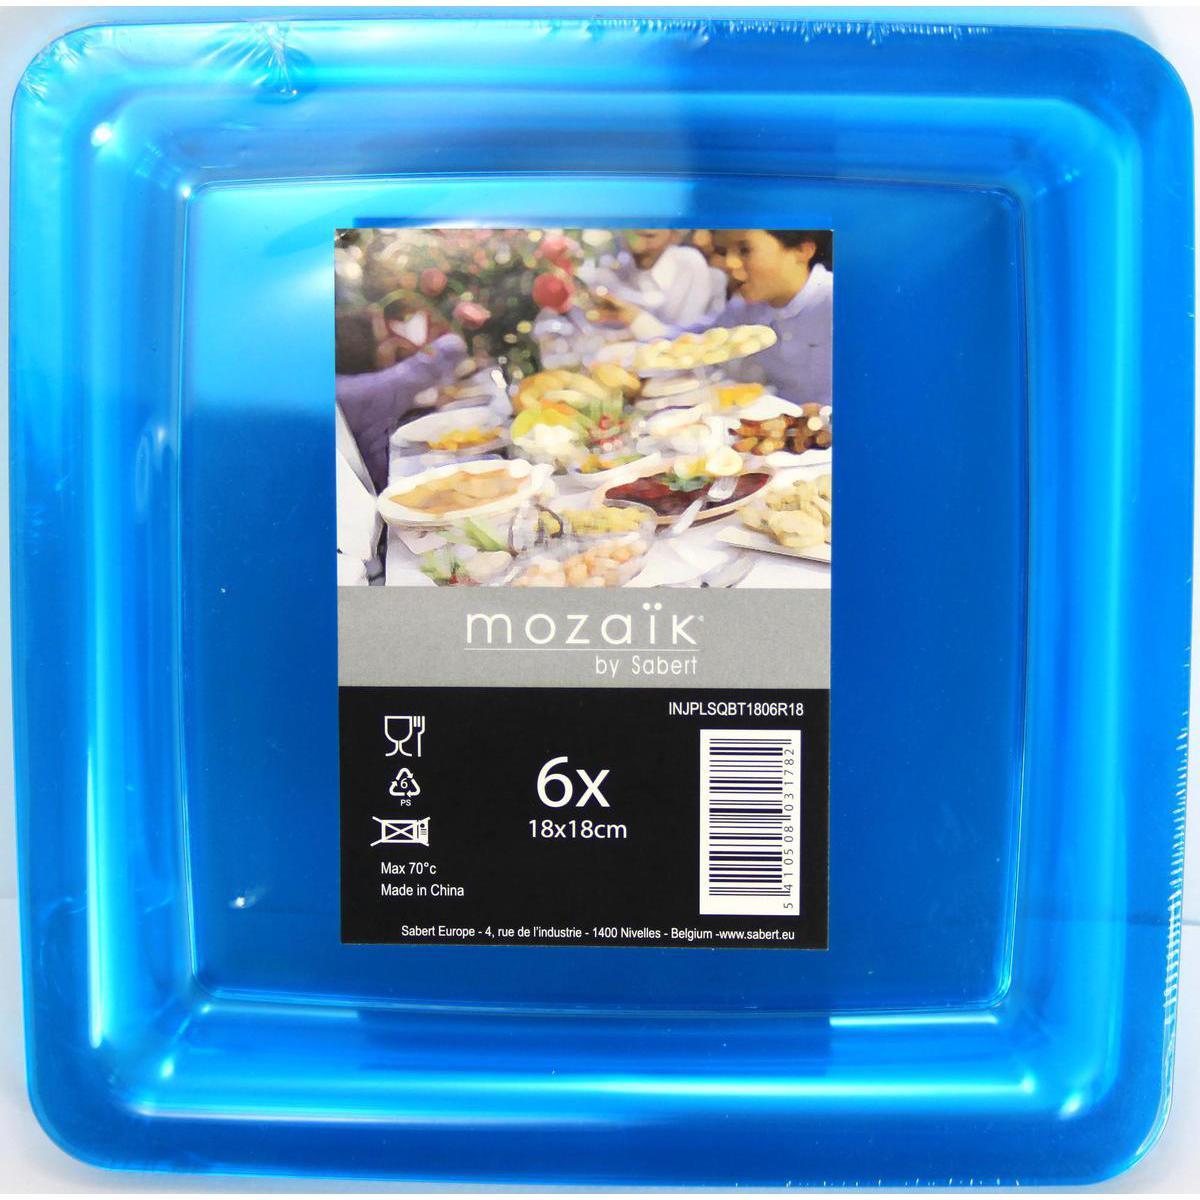 Lot de 6 assiettes réutilisables - 18 x 18 cm -Polystyrène- Bleu turquoise